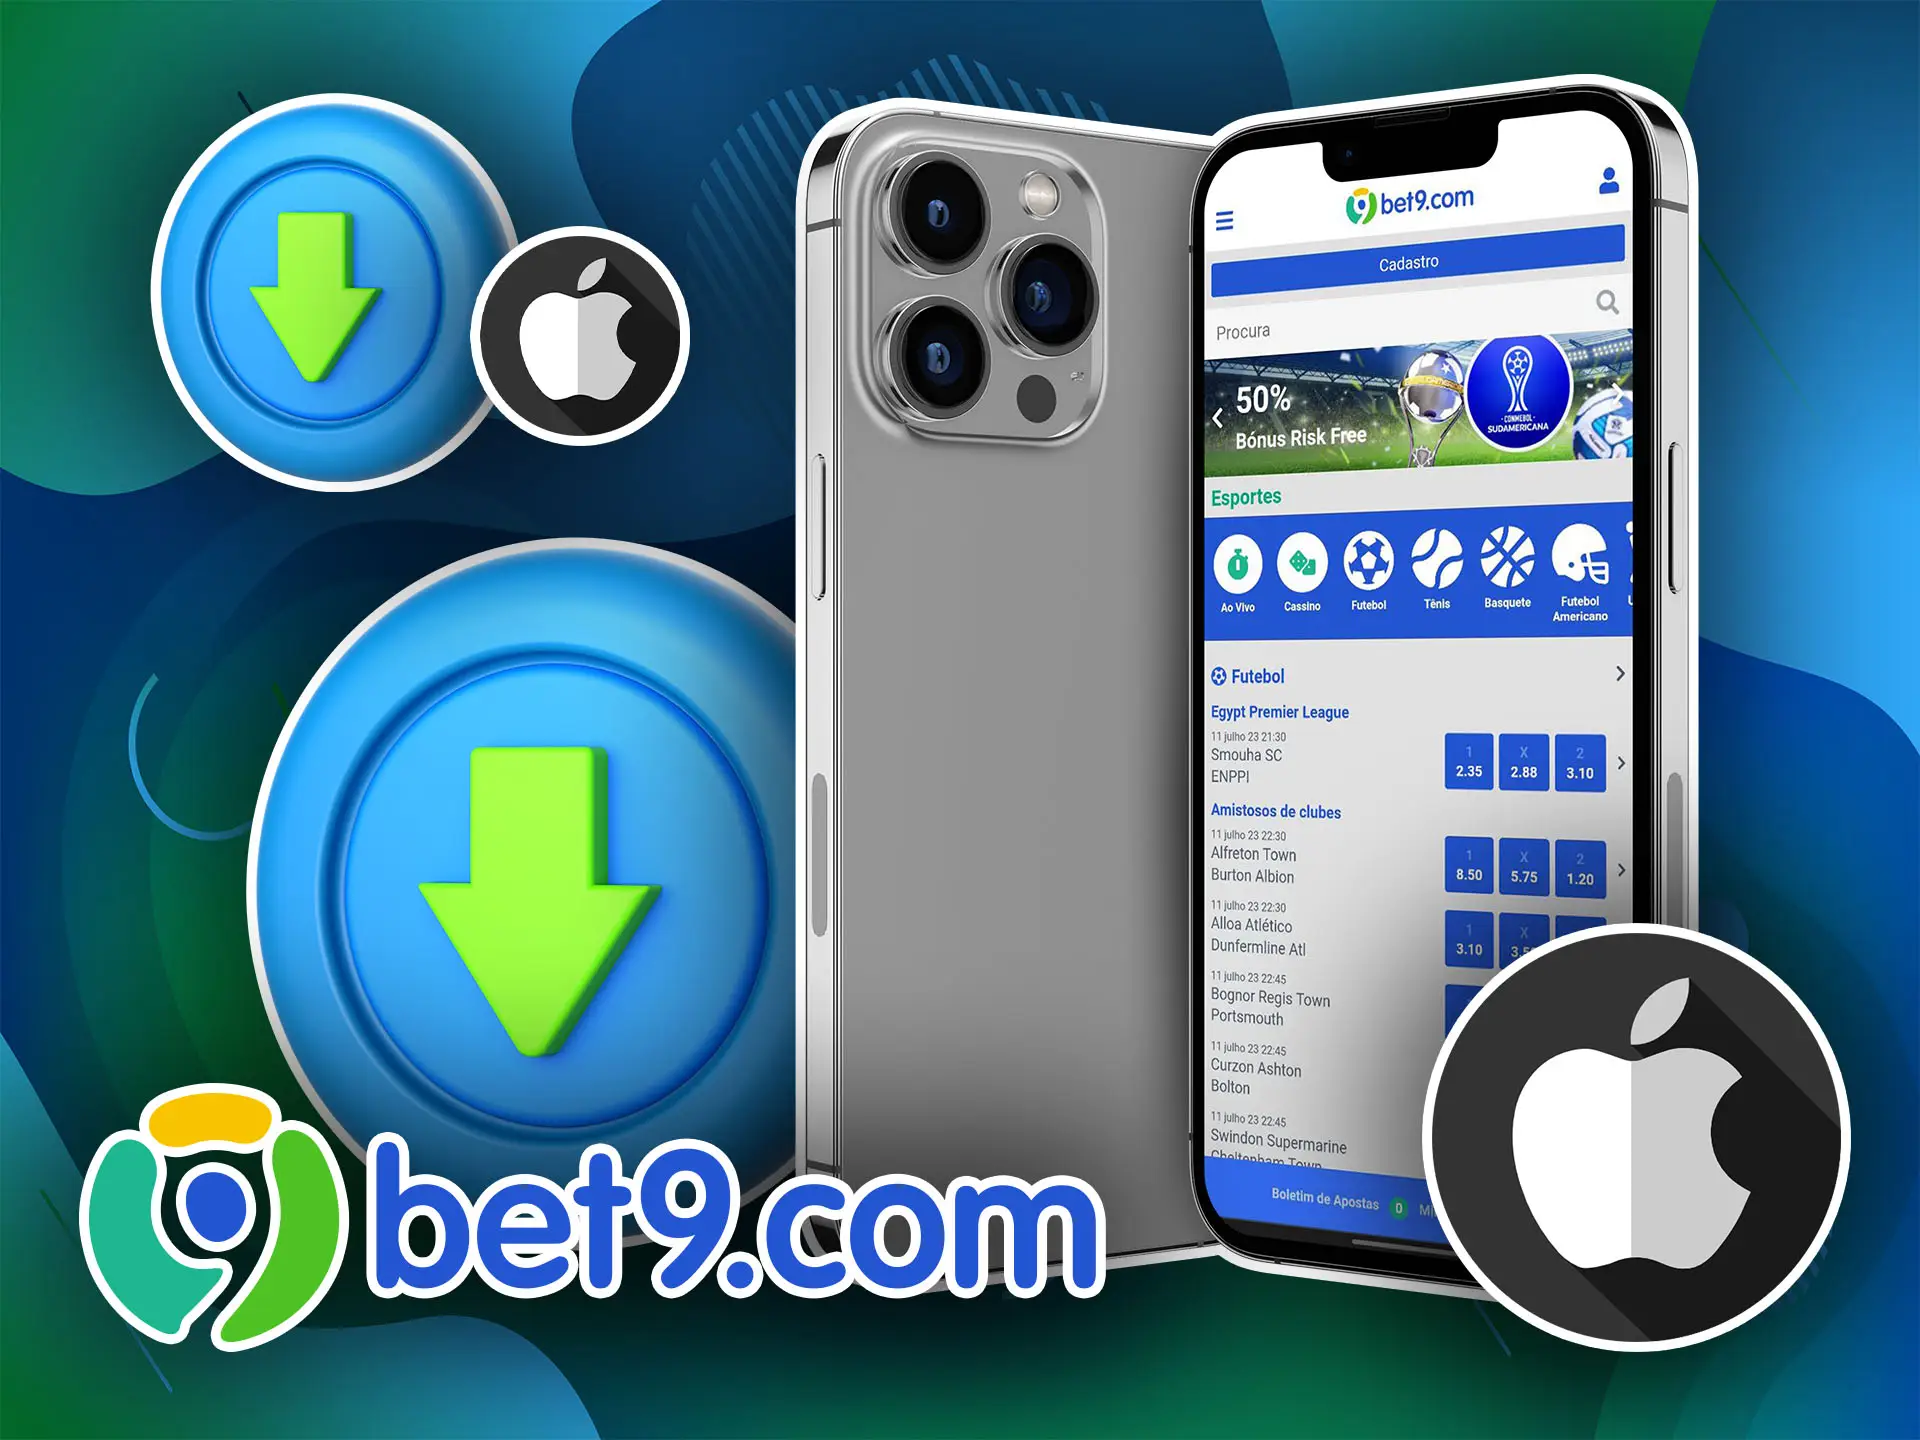 Abra o site da Bet9, baixe a versão do aplicativo para iOS e comece a apostar em esportes.